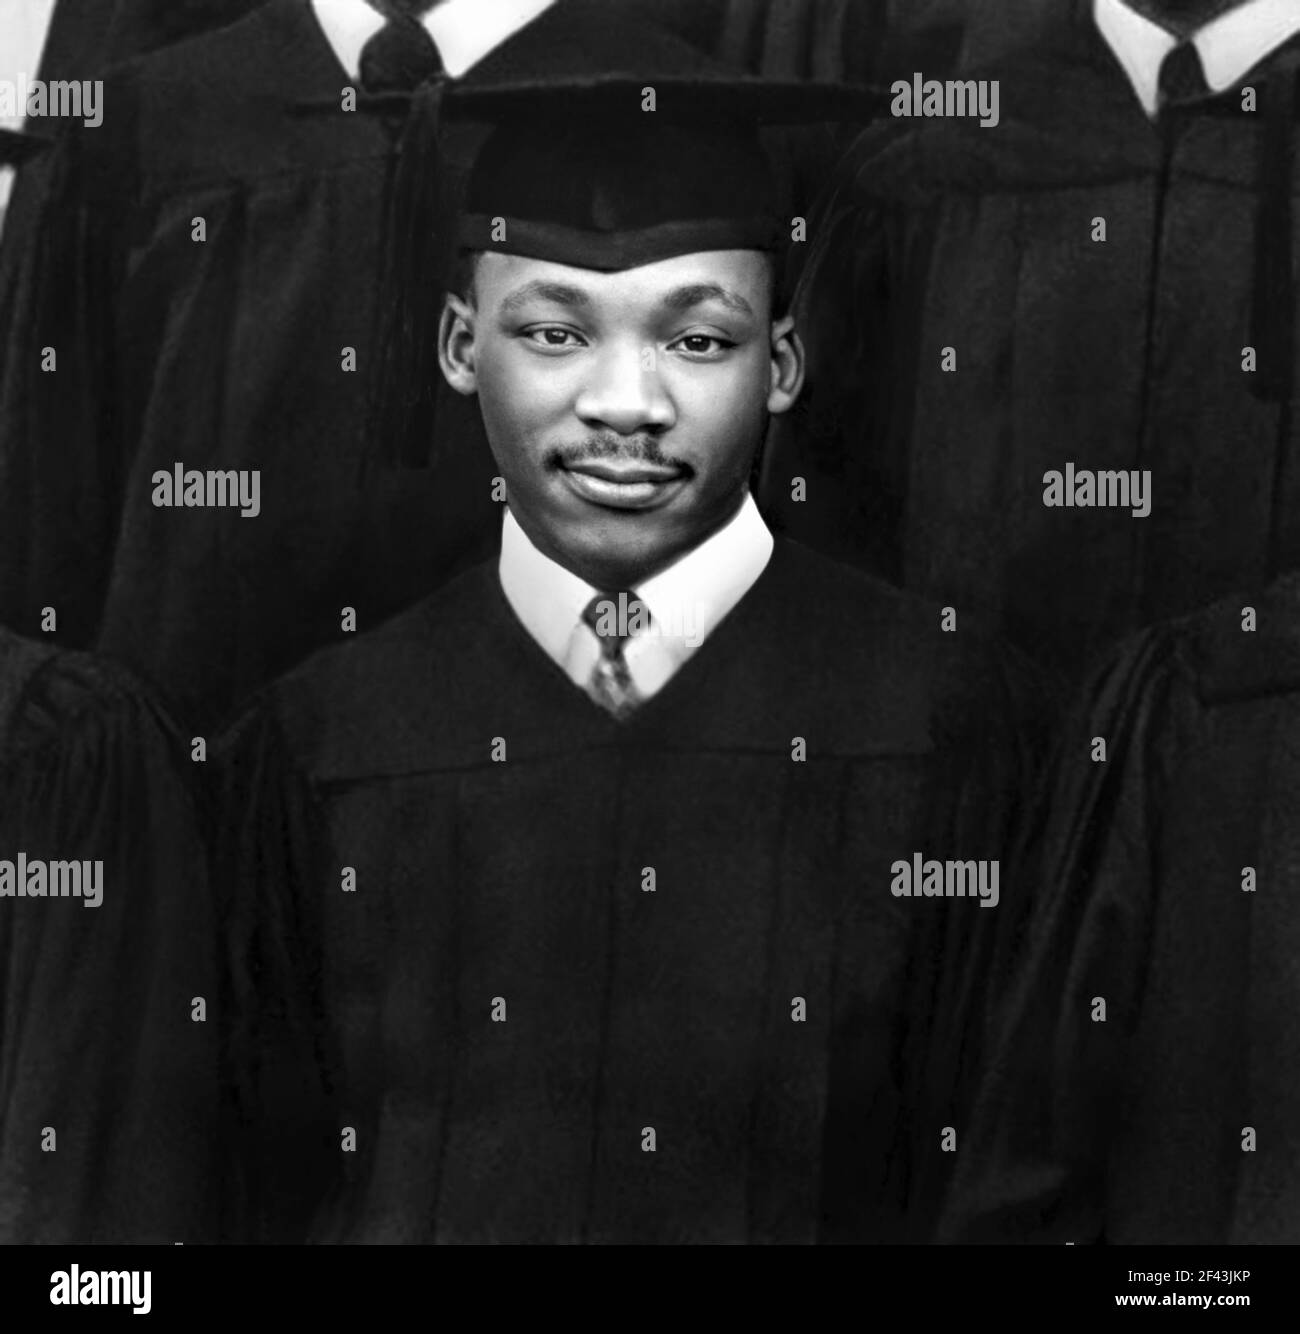 1948 , june , USA : The afro-american politician and leader for the civil rights movement MARTIN LUTHER KING Jr ( 1929 - 1968 ) aged 19 at Atlanta Baptist College , the day of graduation in  Sociology . - Movimento diritti civili - Gente di Colore - AFRO-AMERICANI - Afro Americani - PROGRESSISTA - Progressist - Impegno POLITICO - DIRITTI CIVILI - ANTISEGREGAZIONISTA - anti segregazionista - segregazionismo - POLITIC - POLITICA - PASTORE PROTESTANTE - Diploma  Laurea in Sociologia - tie - cravatta - baffi - moustache - hat - cappello --- Archivio GBB Stock Photo